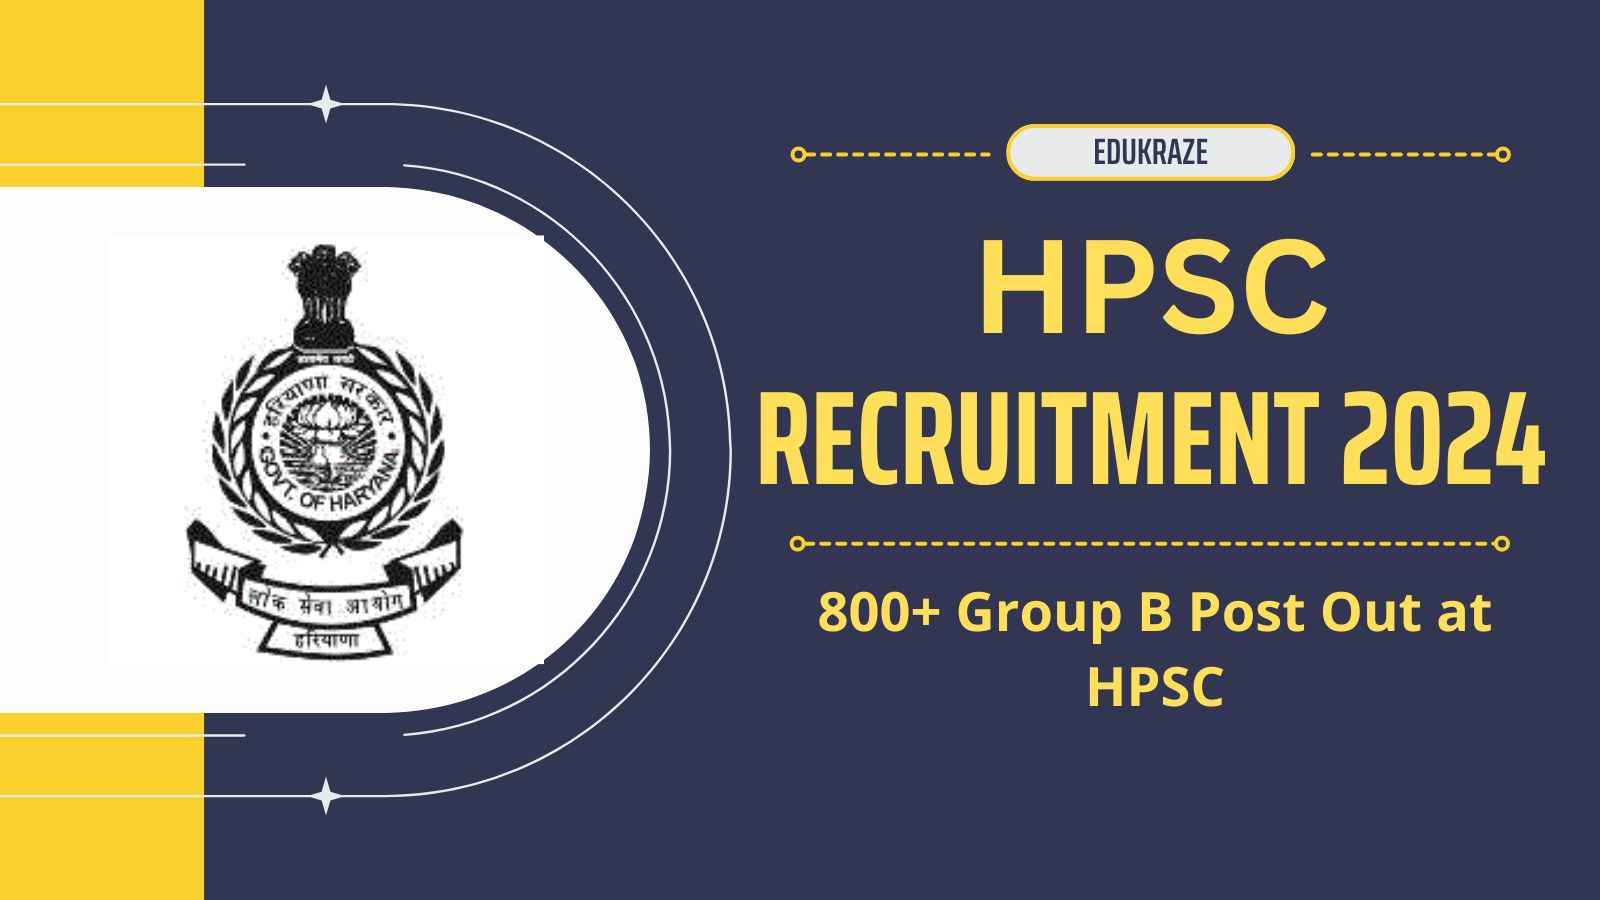 HPSC Announces Bumper Recruitment for 800+ Group B Posts